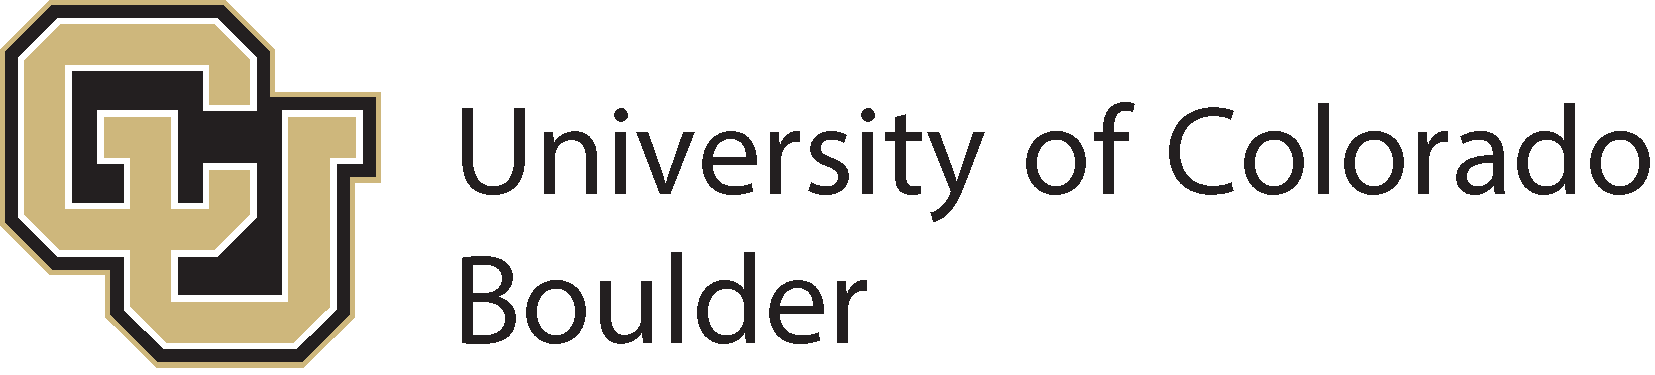 לוגו אוניברסיטת קולורדו בולדר (CU Boulder) - SVG, PNG, AI, EPS ...